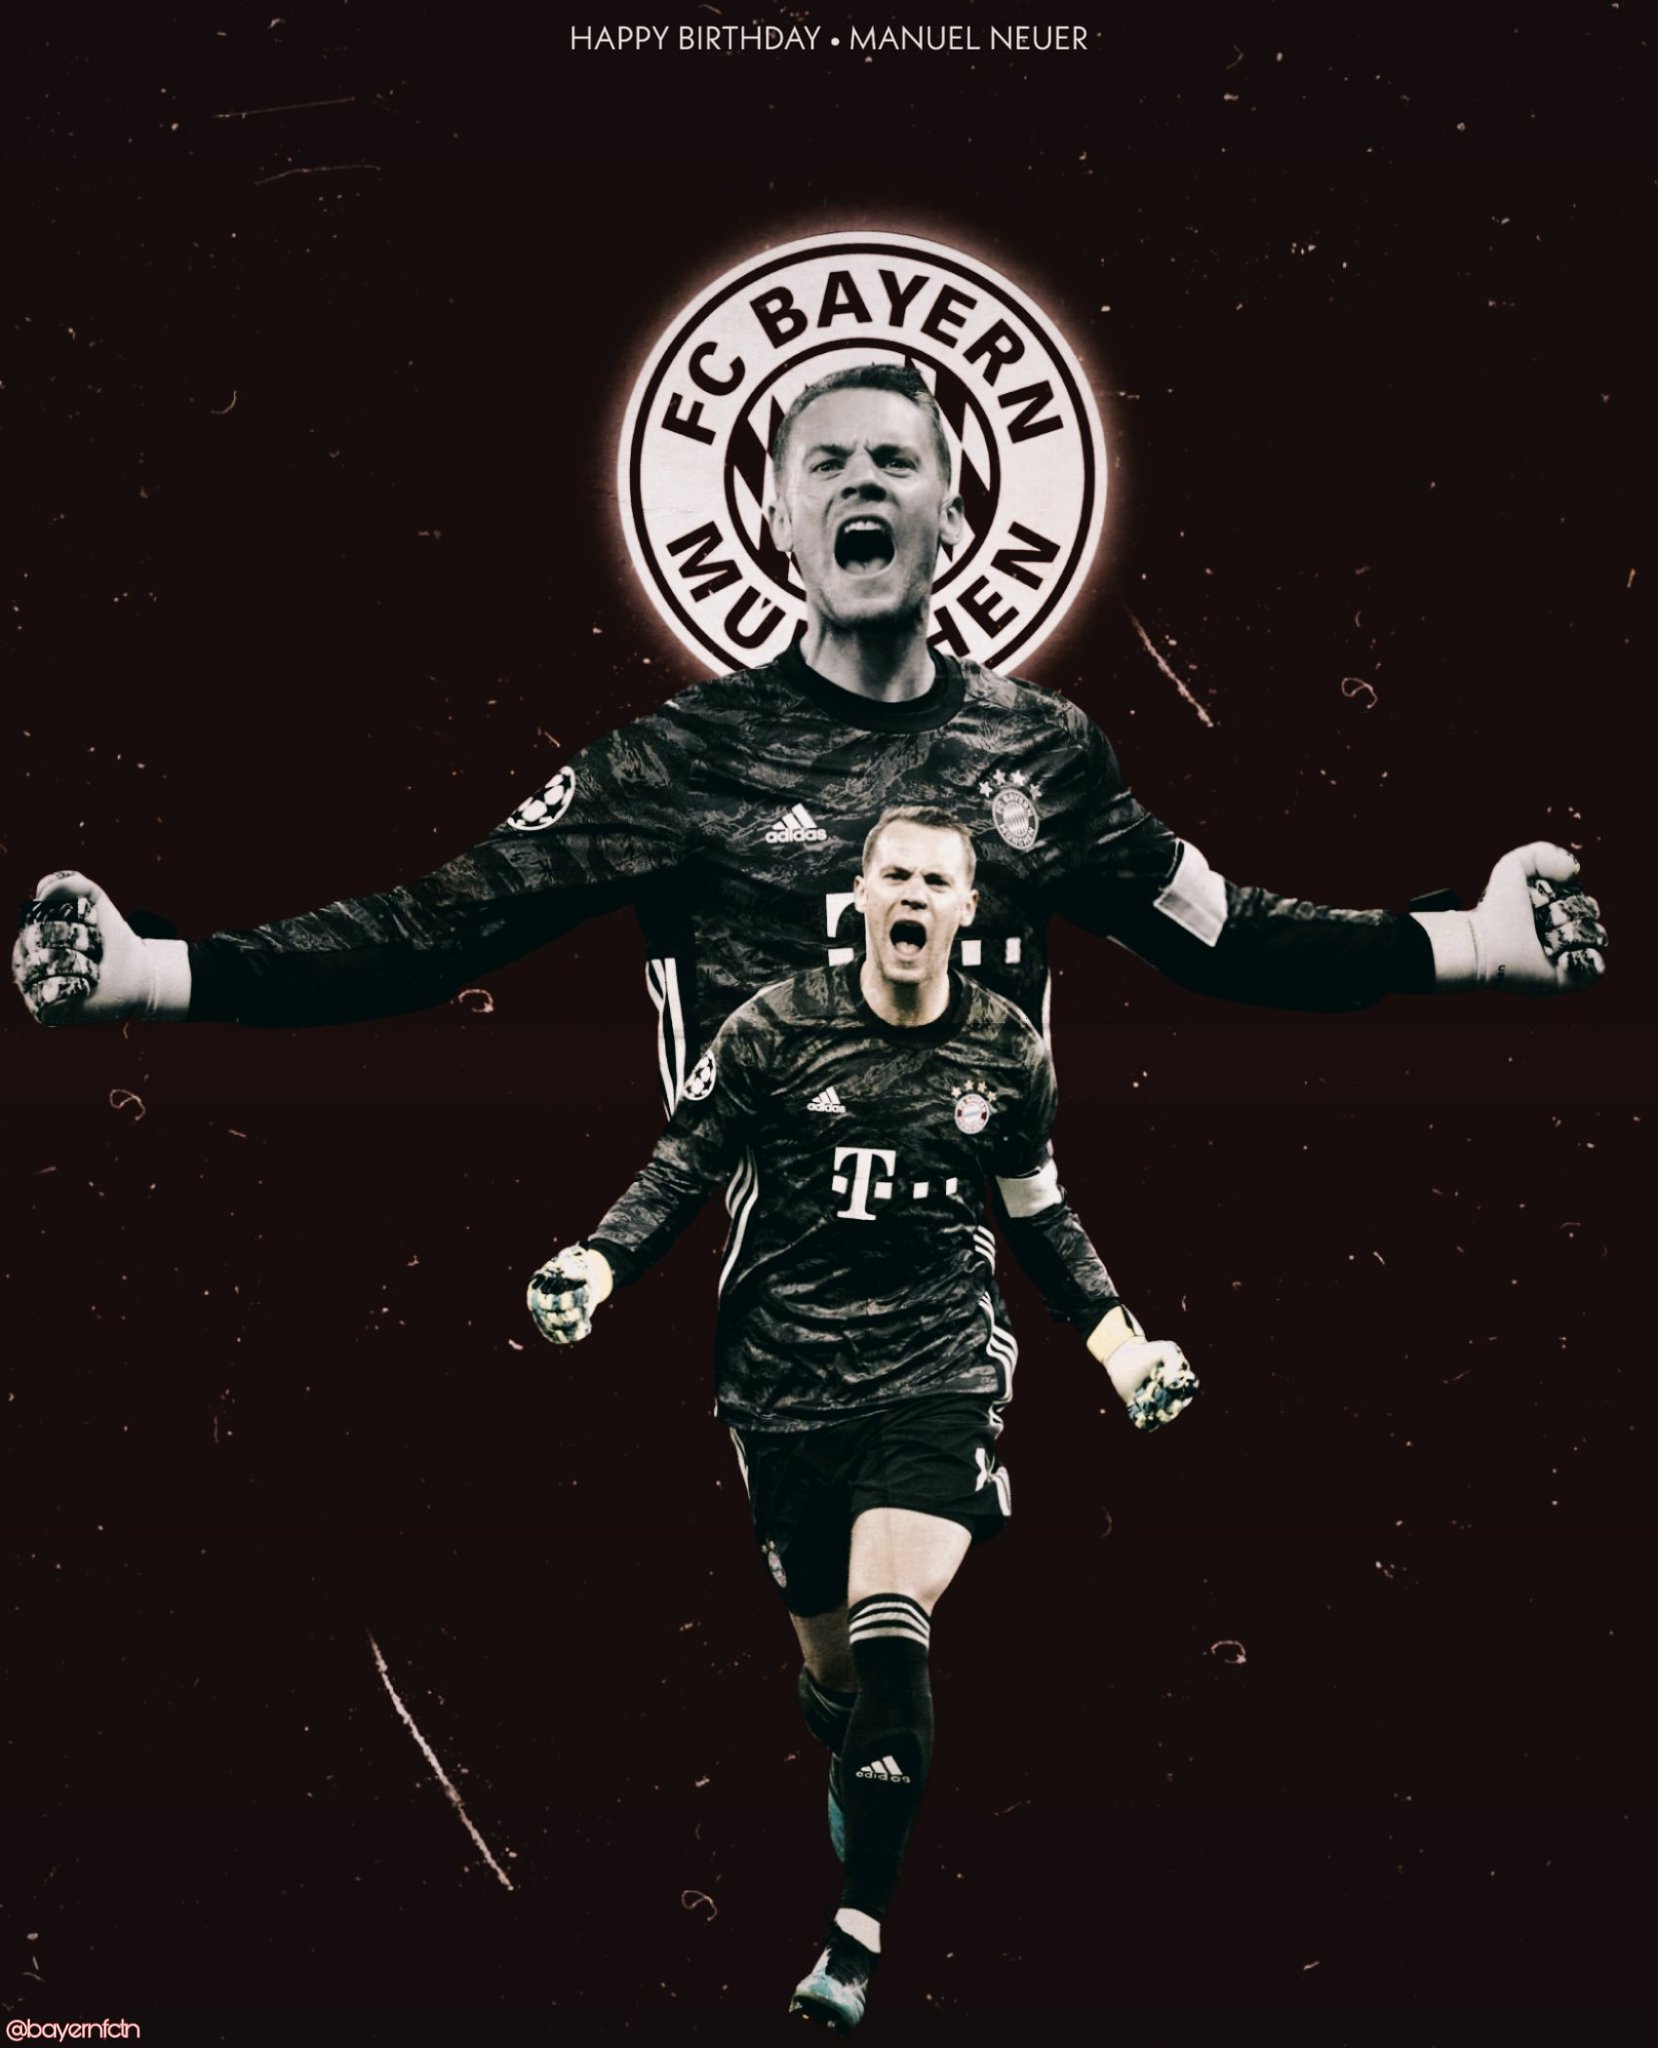 Happy Birthday Manuel Neuer! G O A L GOAT KEEPER     